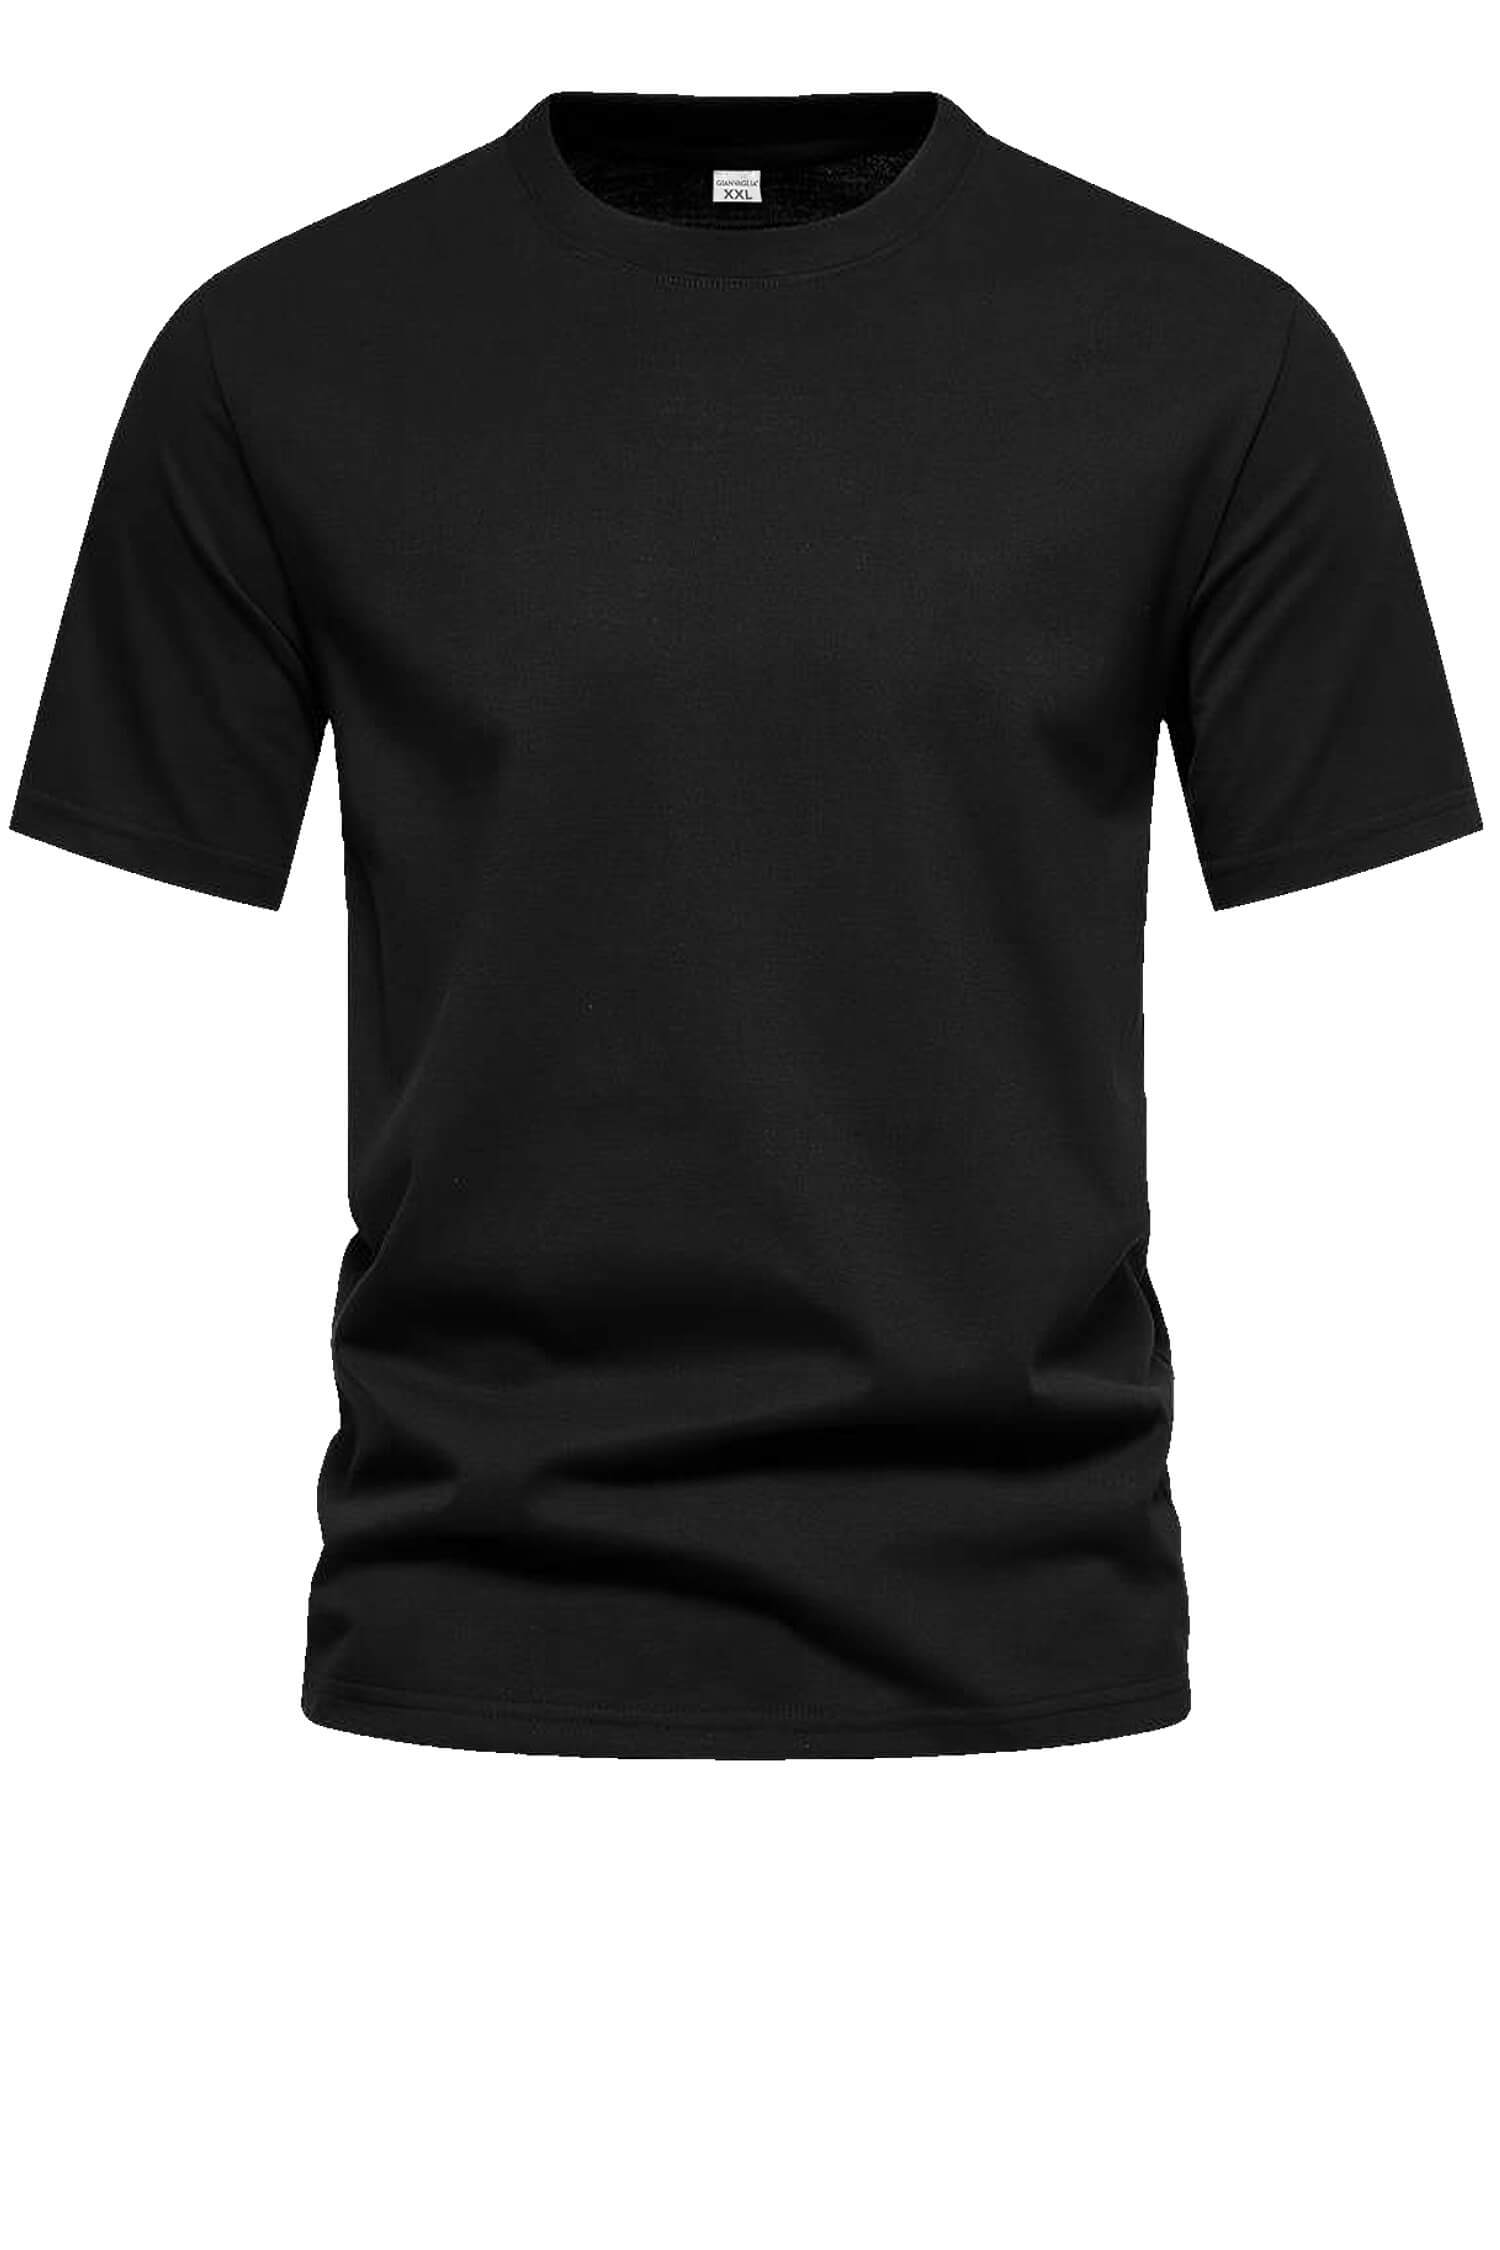 Bořek pánské klasické tričko TS-1006 M černá